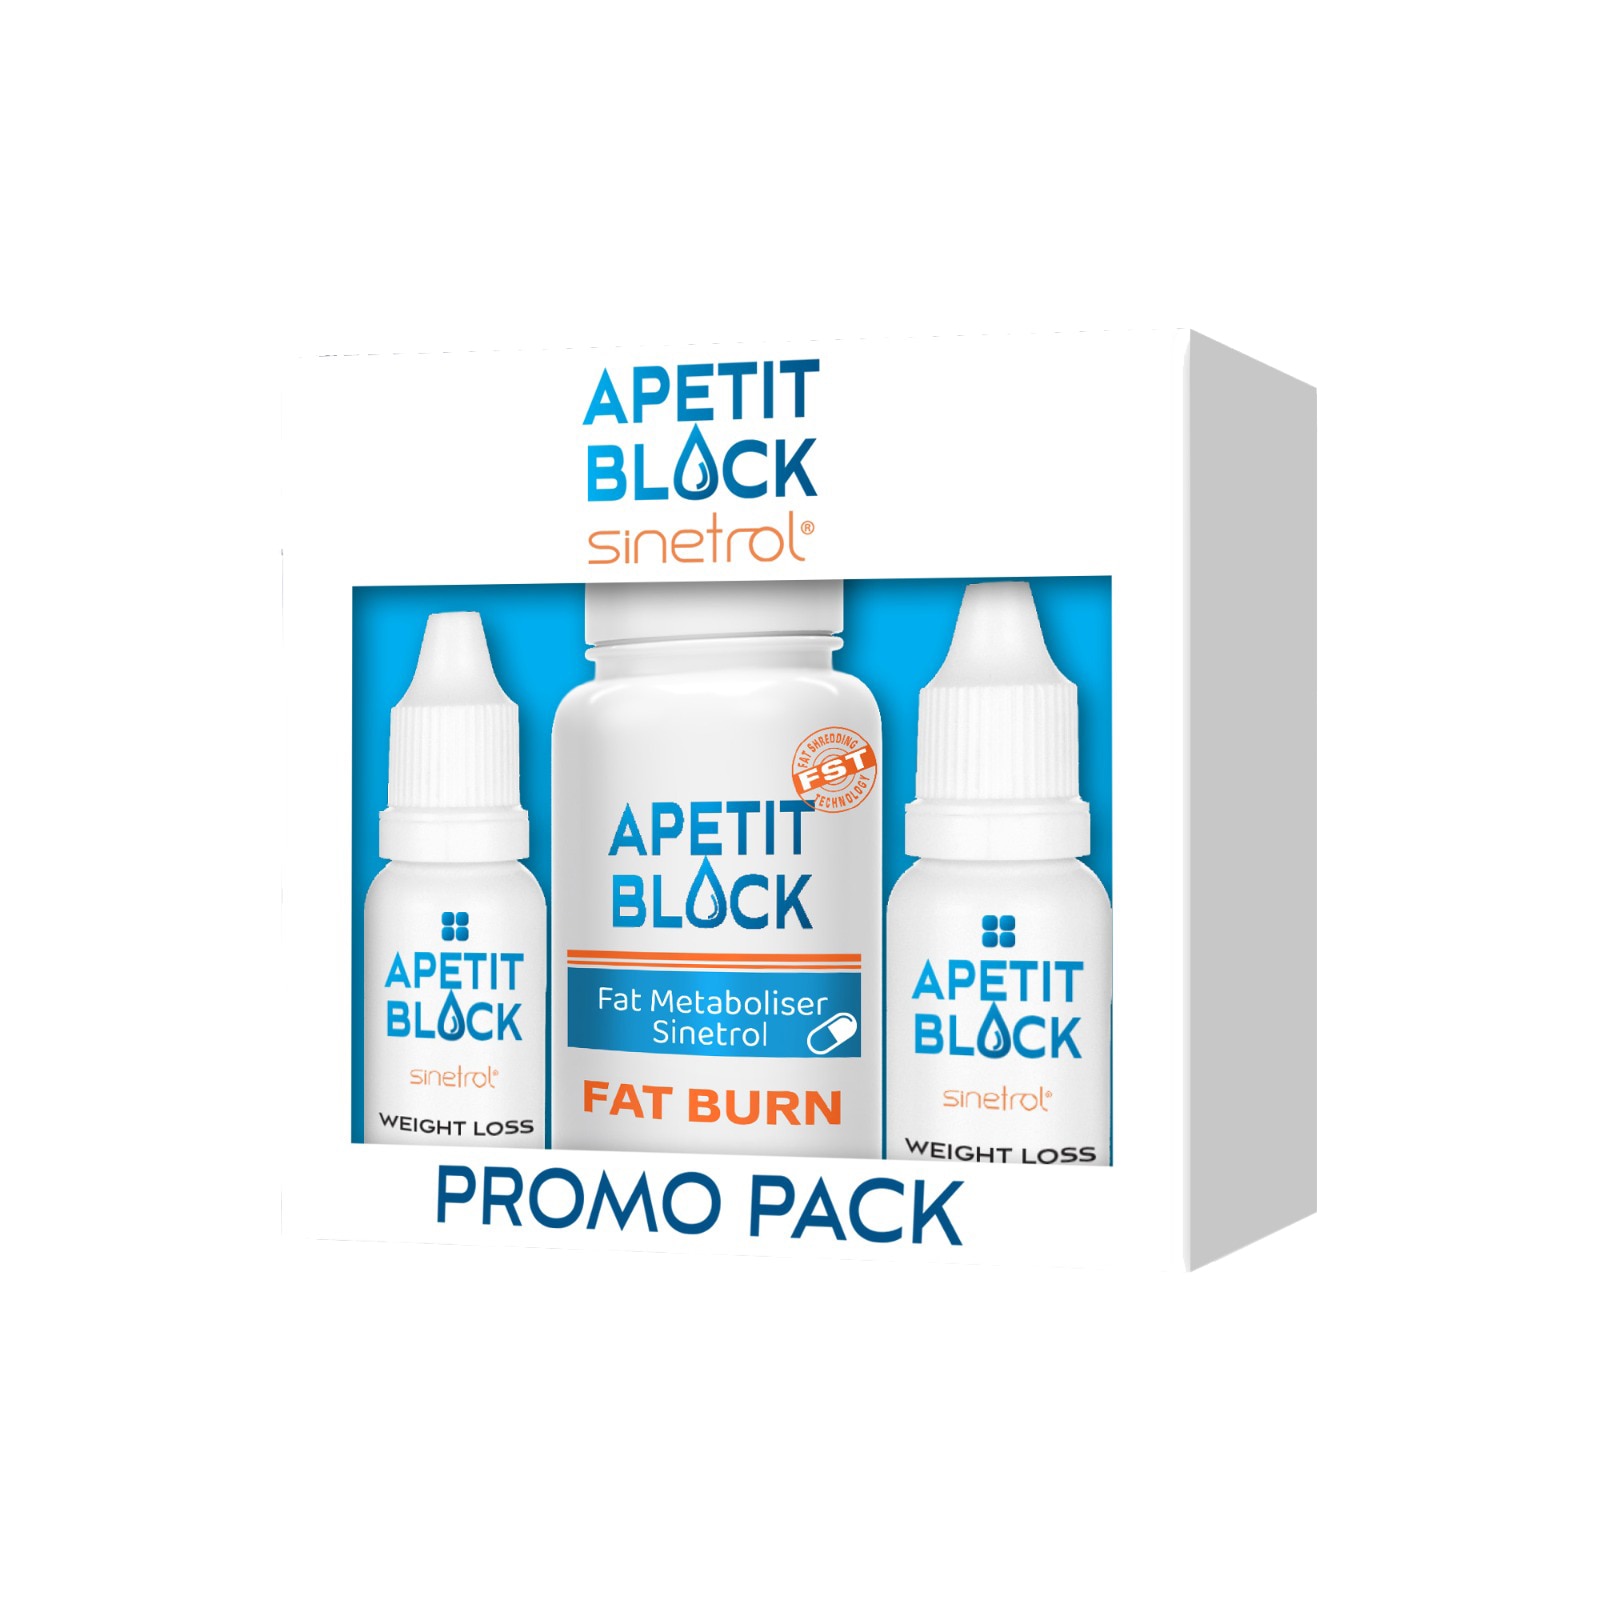 Acasa - Apetitblock, Picaturi apetit block de slabit pret